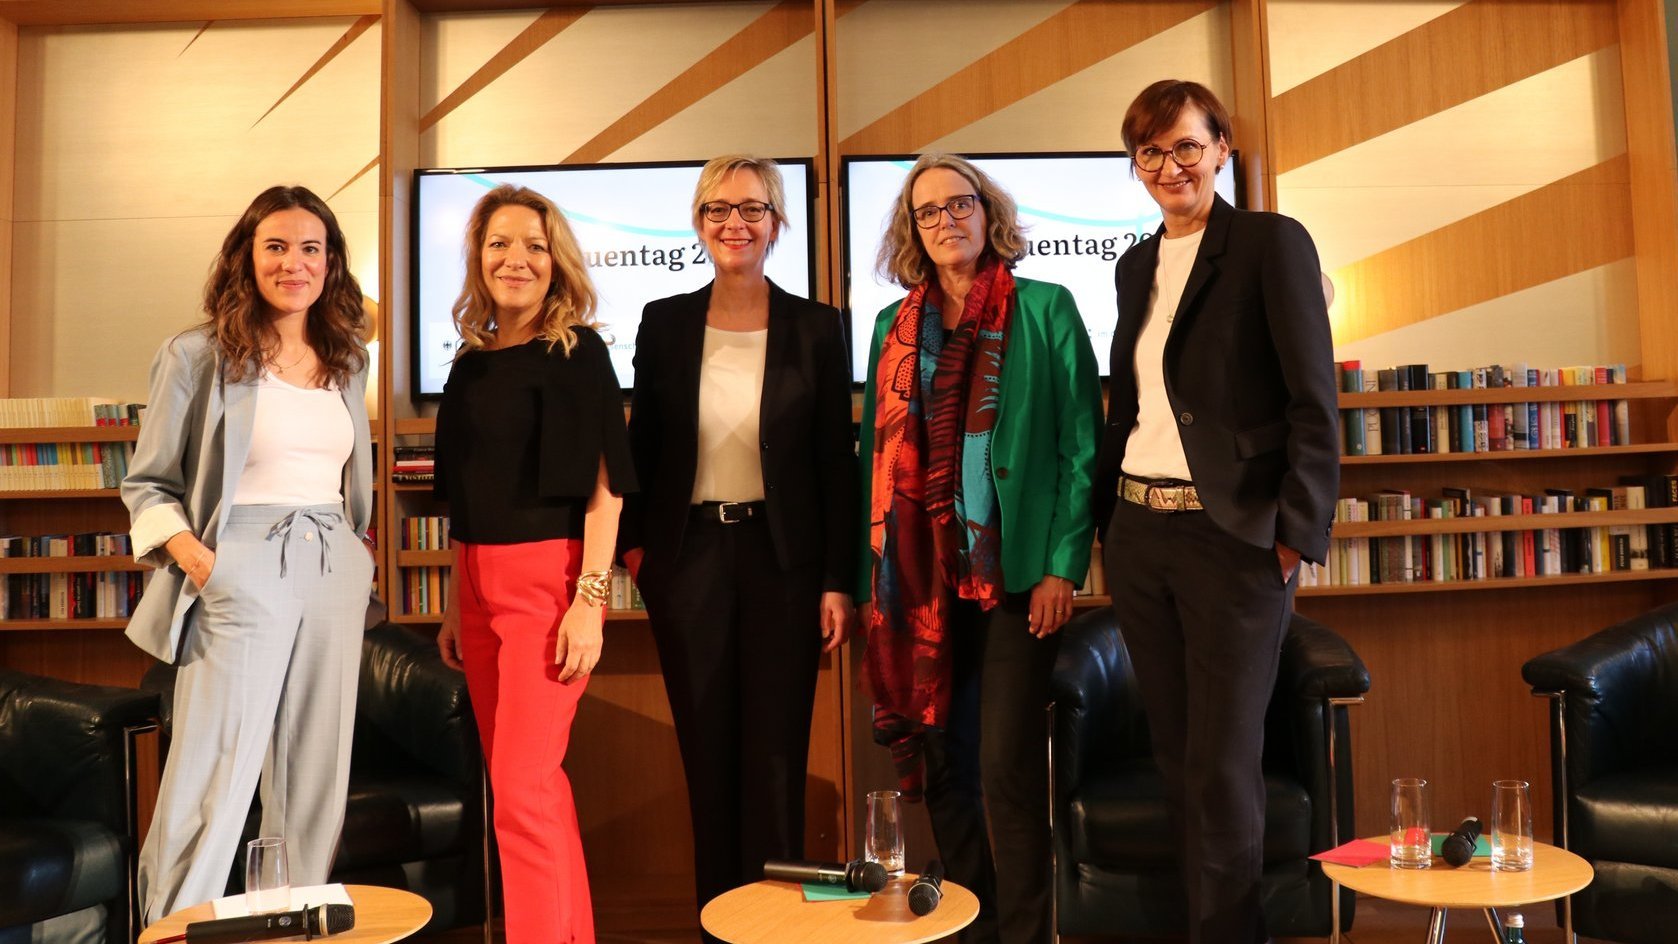 Bundesforschungsministerin Bettina Stark-Watzinger, Prof. Dr. Christiane Schwieren, Prof. Dr. Antje Boetius, Christine Regitz und Mona Ameziane auf einem Gruppenfoto.